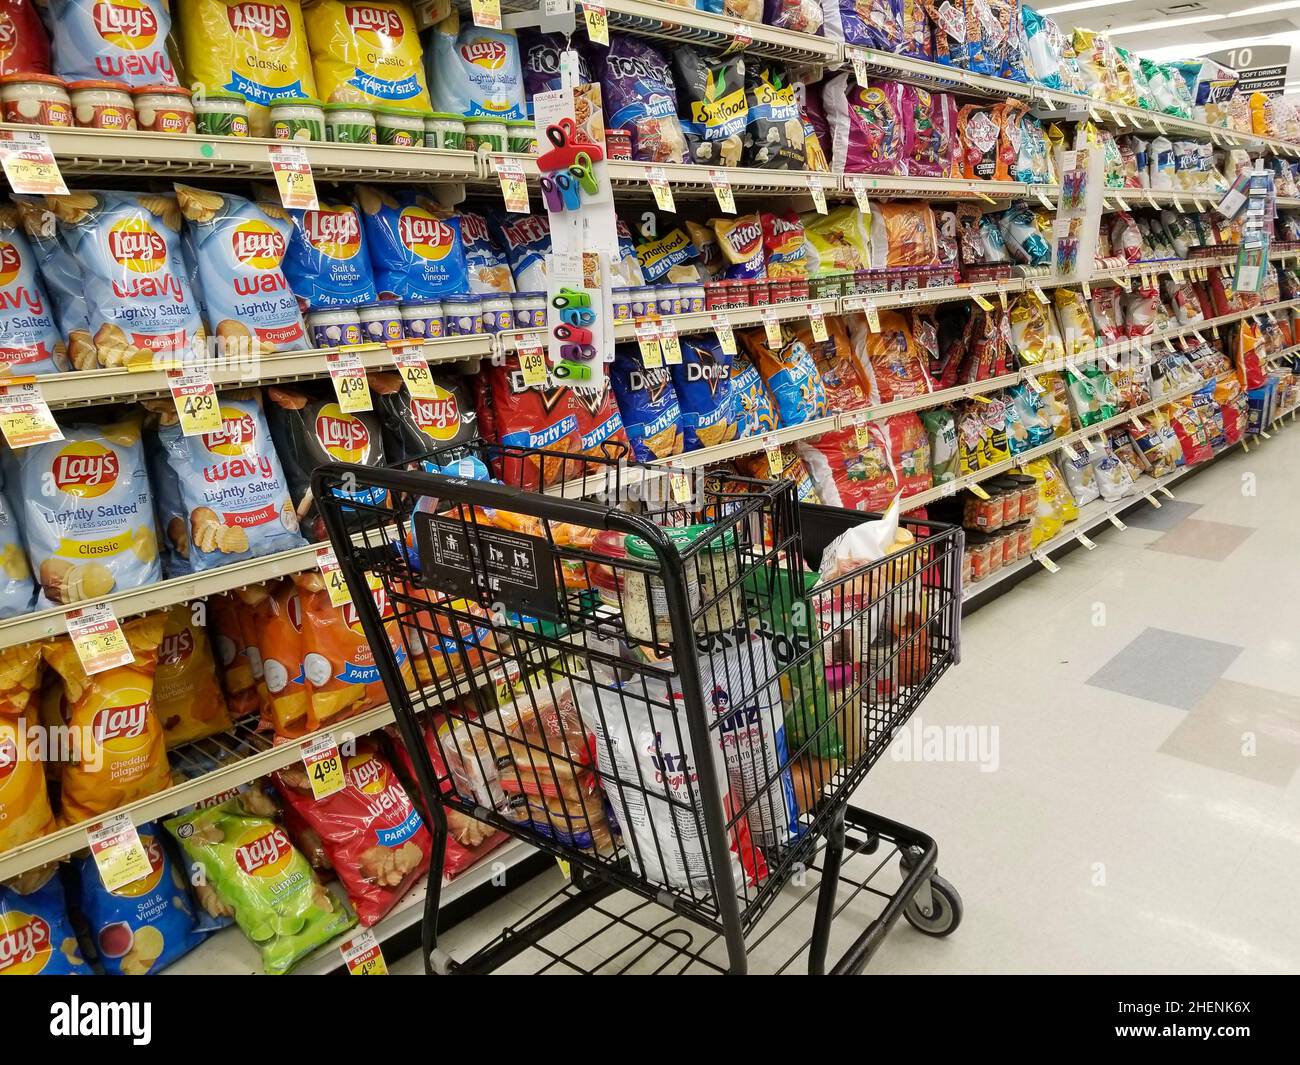 Carros De La Compra Del Supermercado En Fila En El Estacionamiento Grande  De La Tienda Del Supermercado Imagen de archivo - Imagen de equipo, carro:  128755719